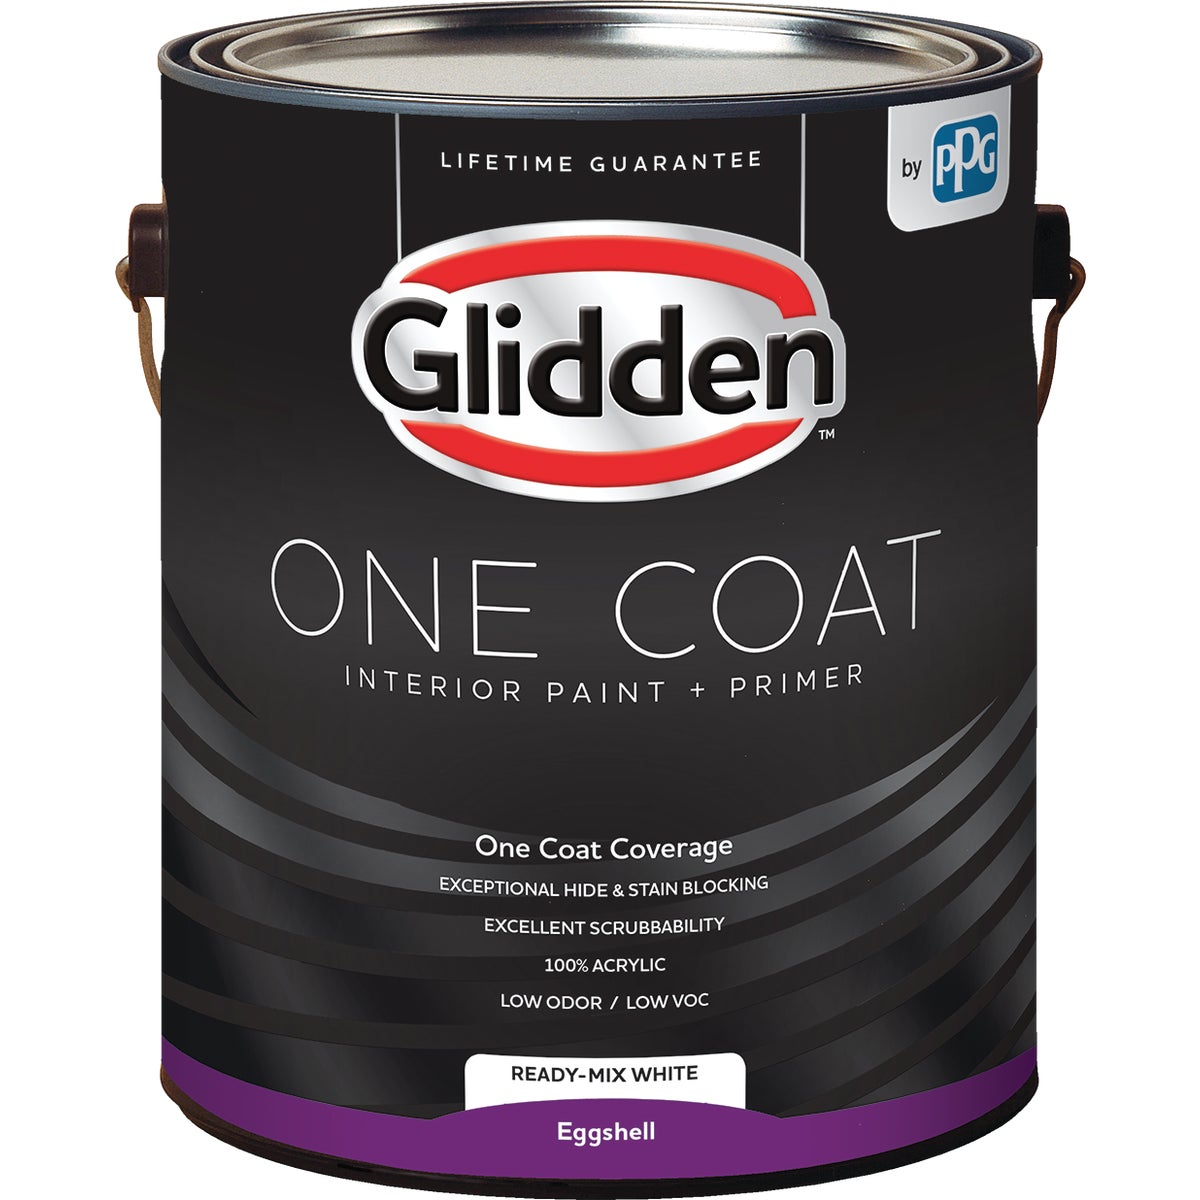 Glidden One Coat Interior Paint + Primer Eggshell Ready Mix White 1 Gallon